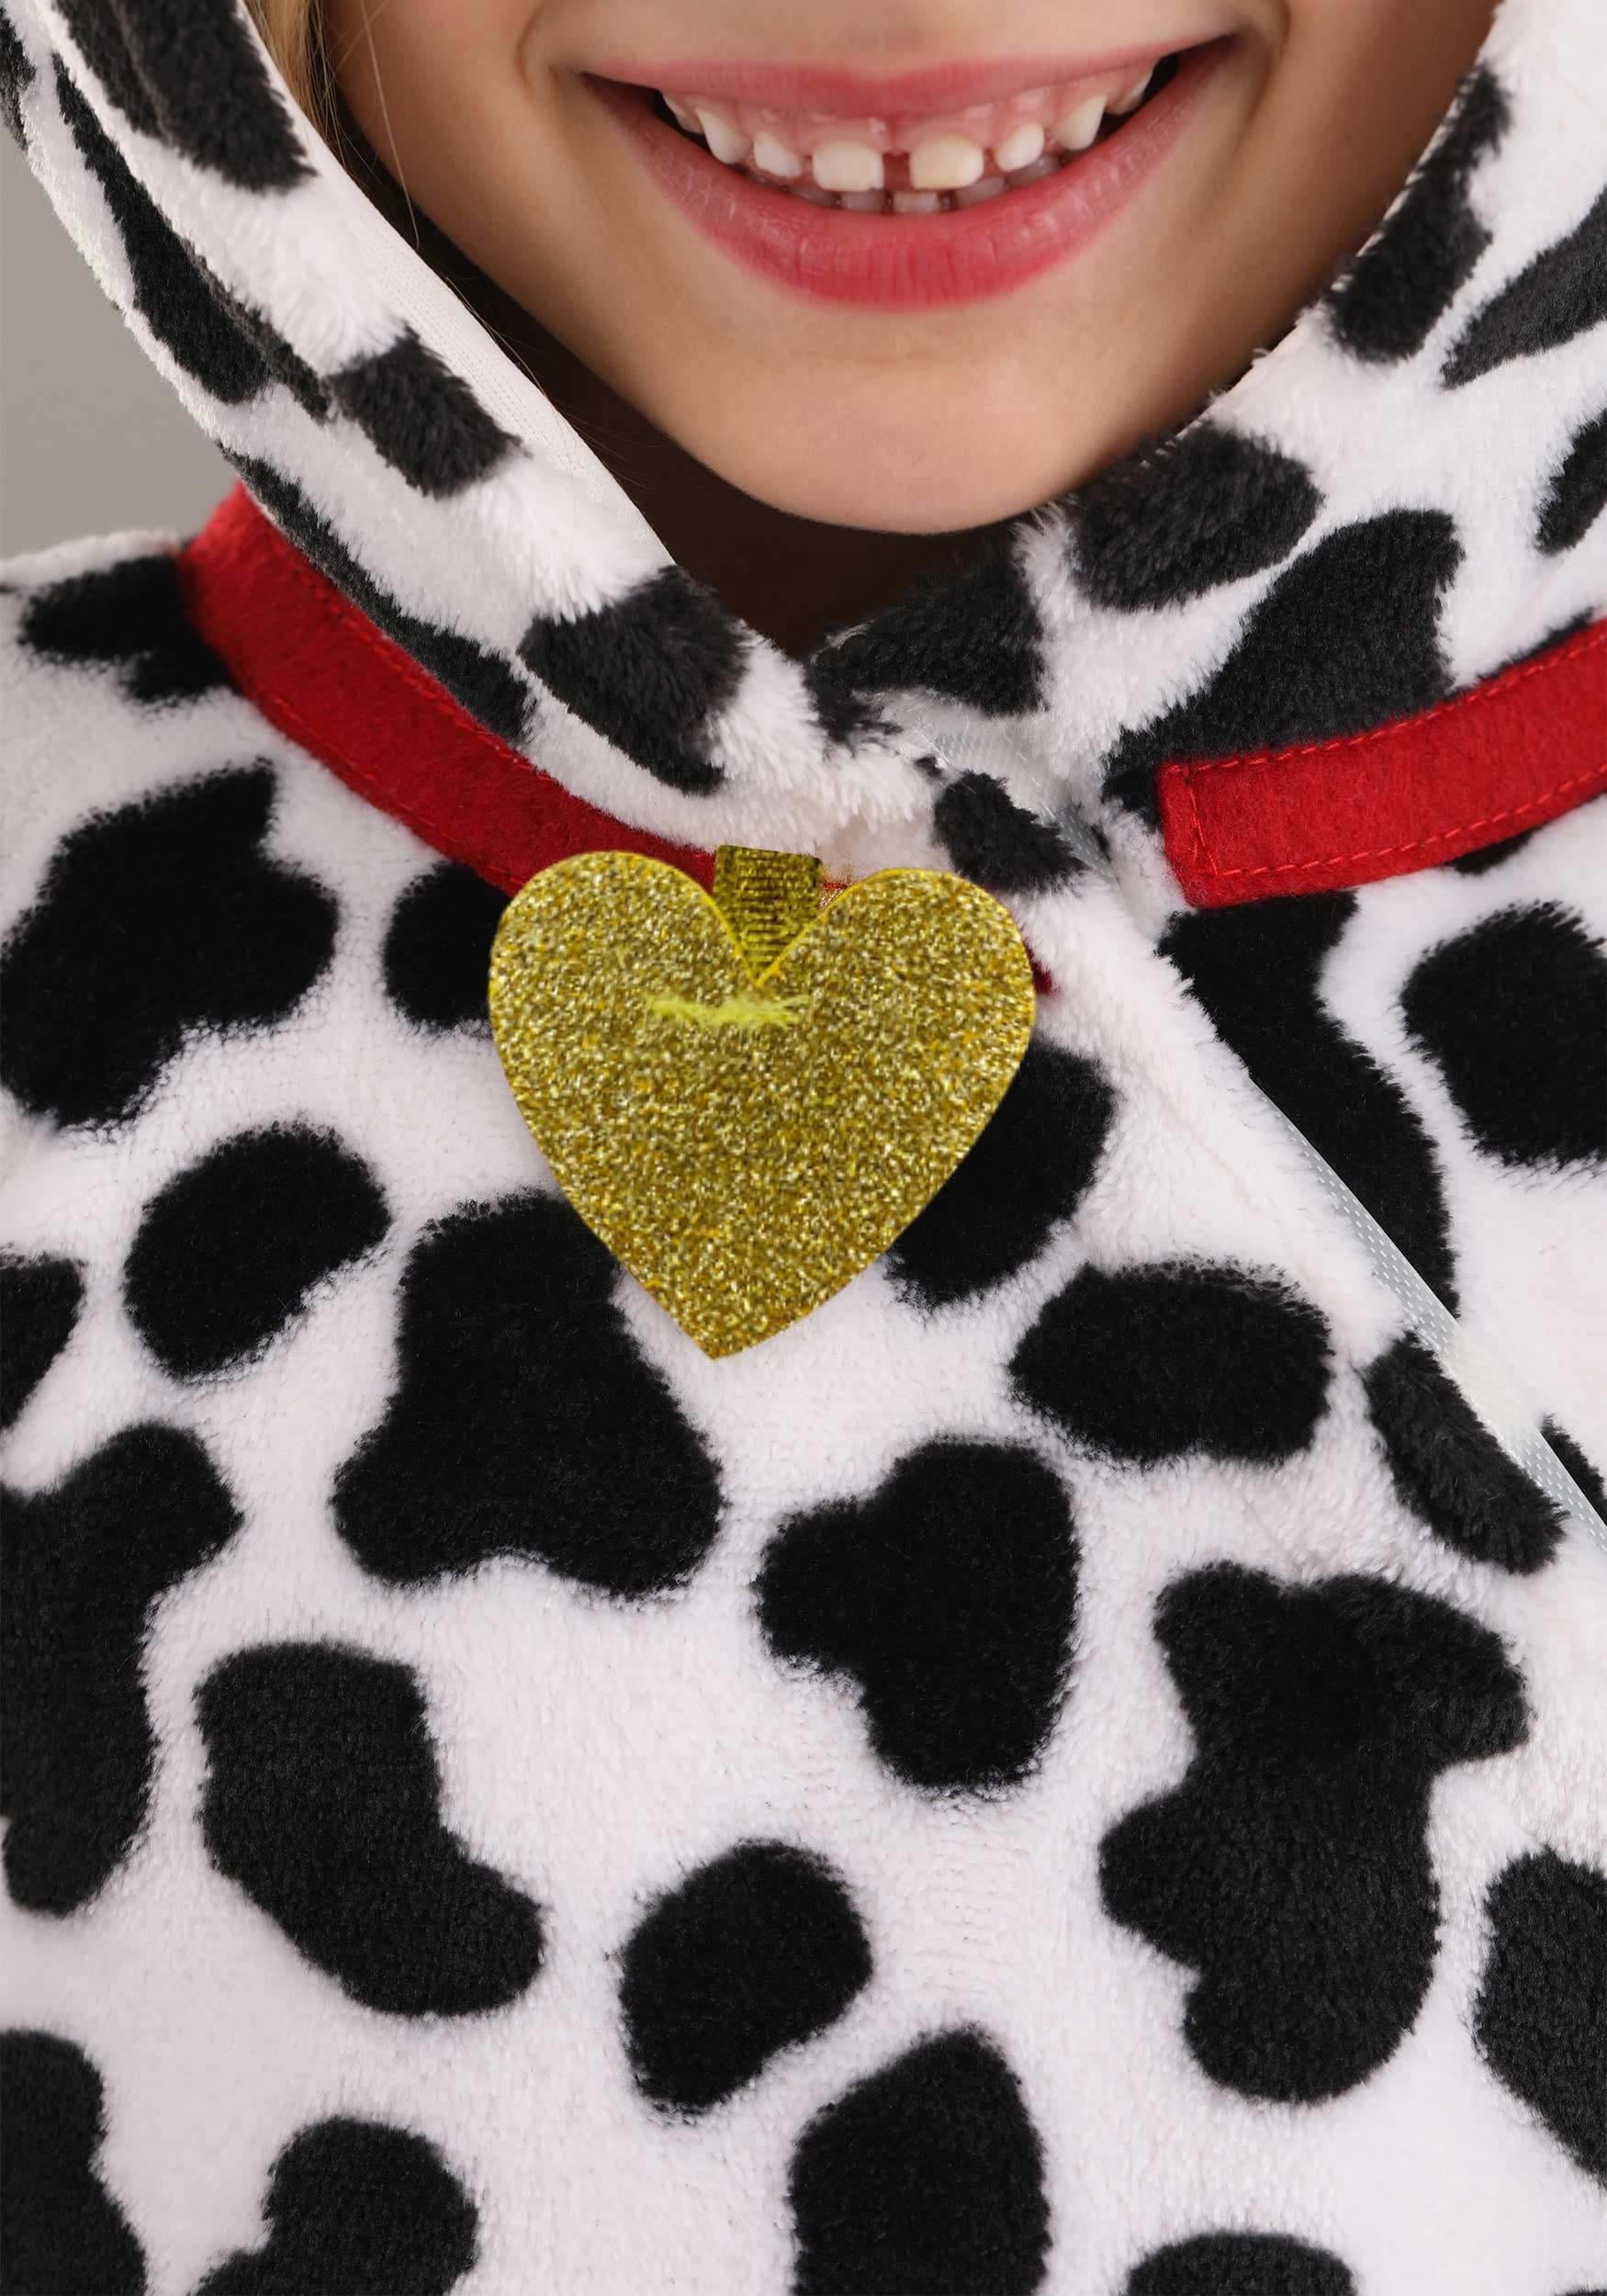 Soft Dalmatian Toddler Tutu Costume